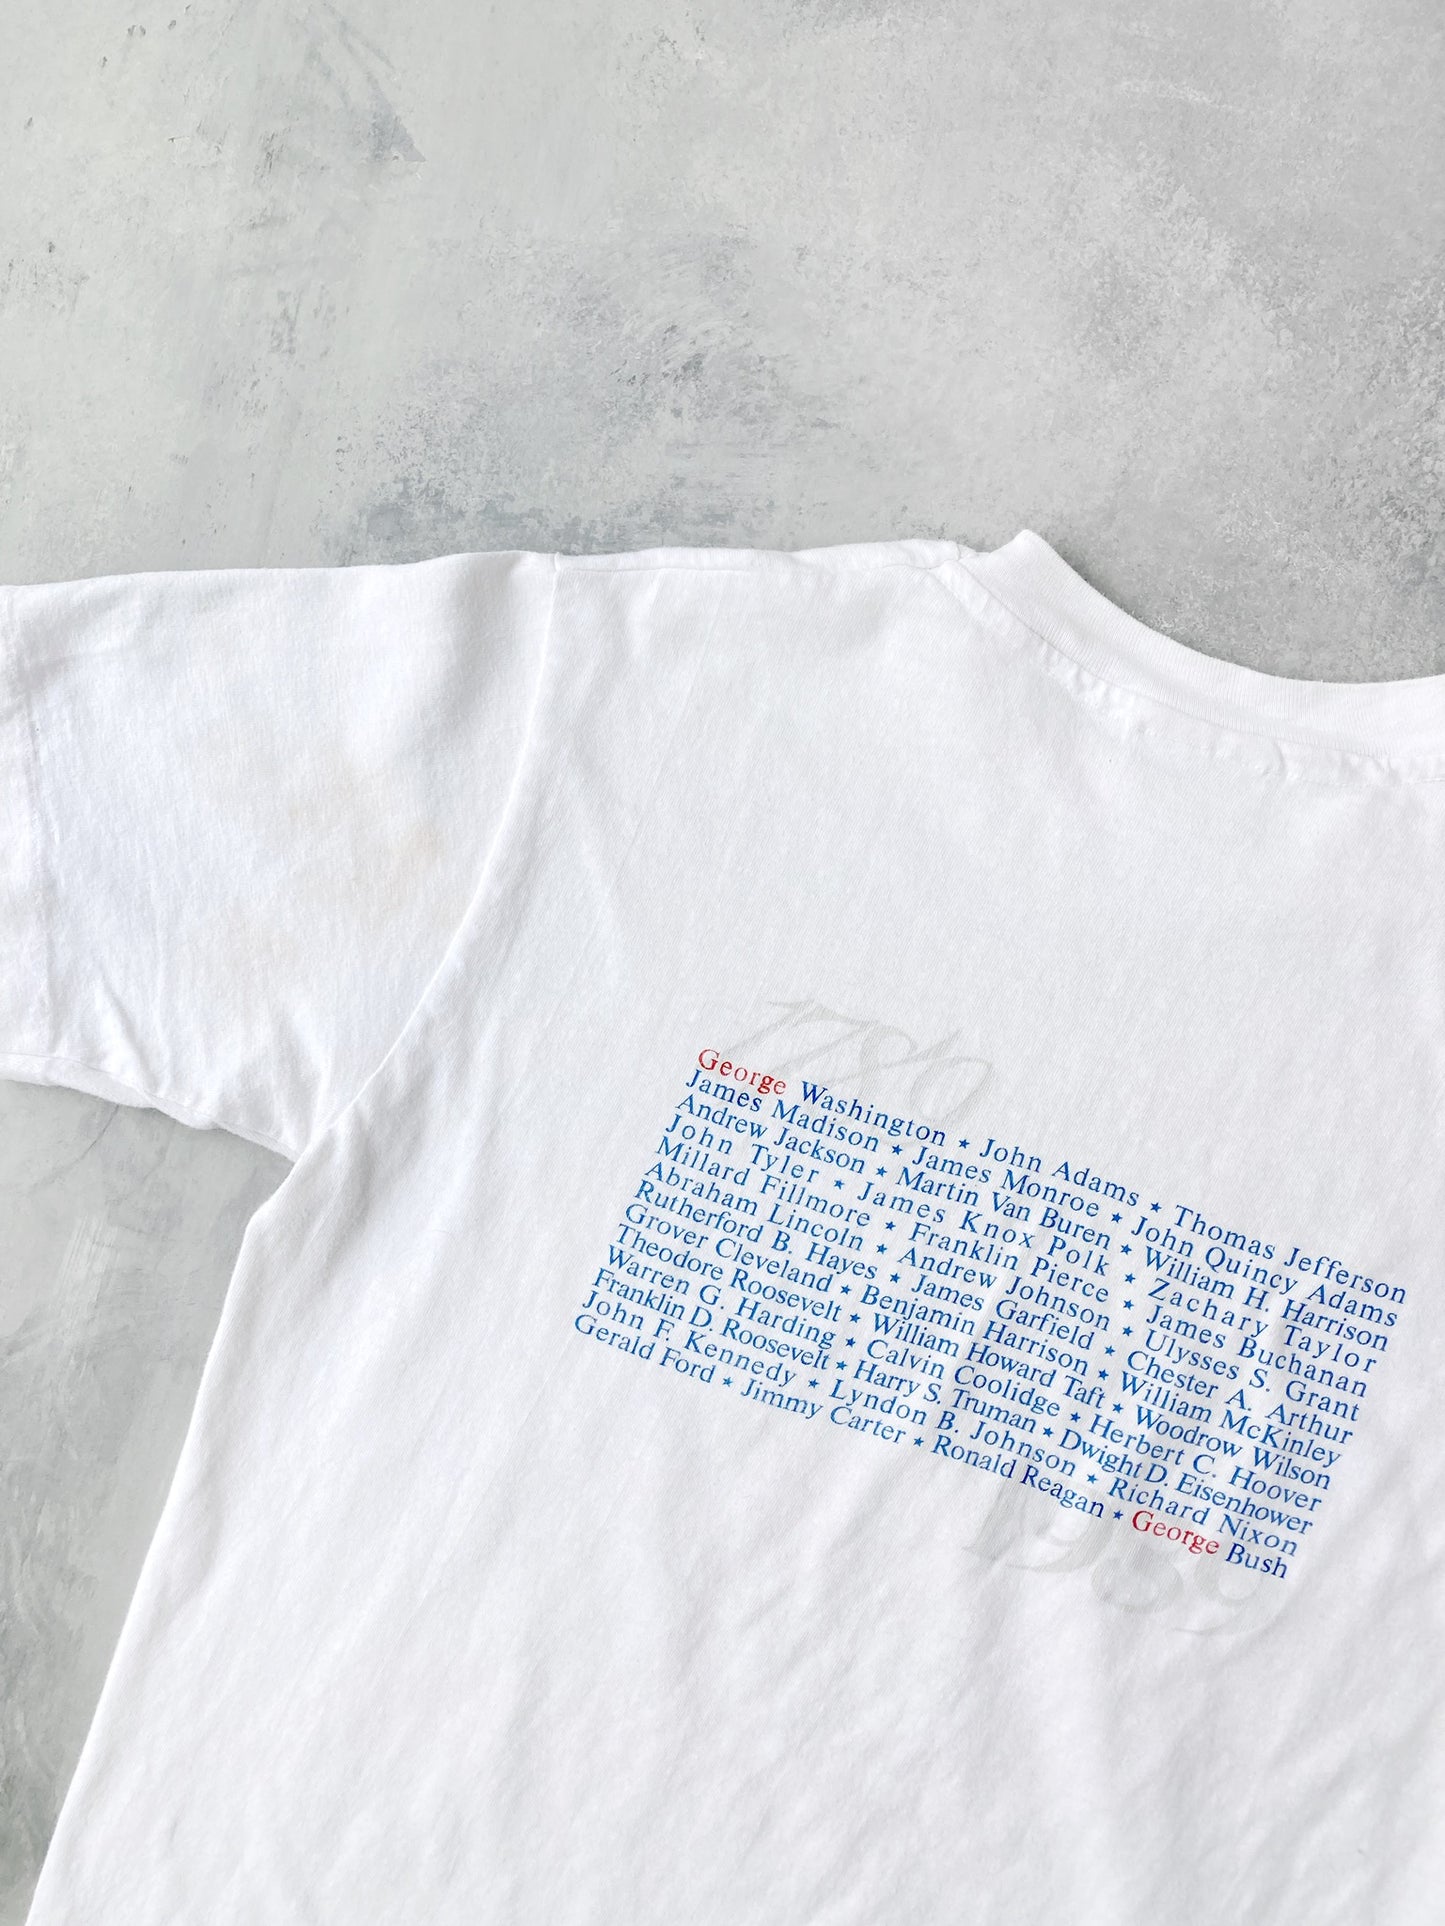 American Bicentennial Presidential Inaugural T-Shirt '89 - Medium